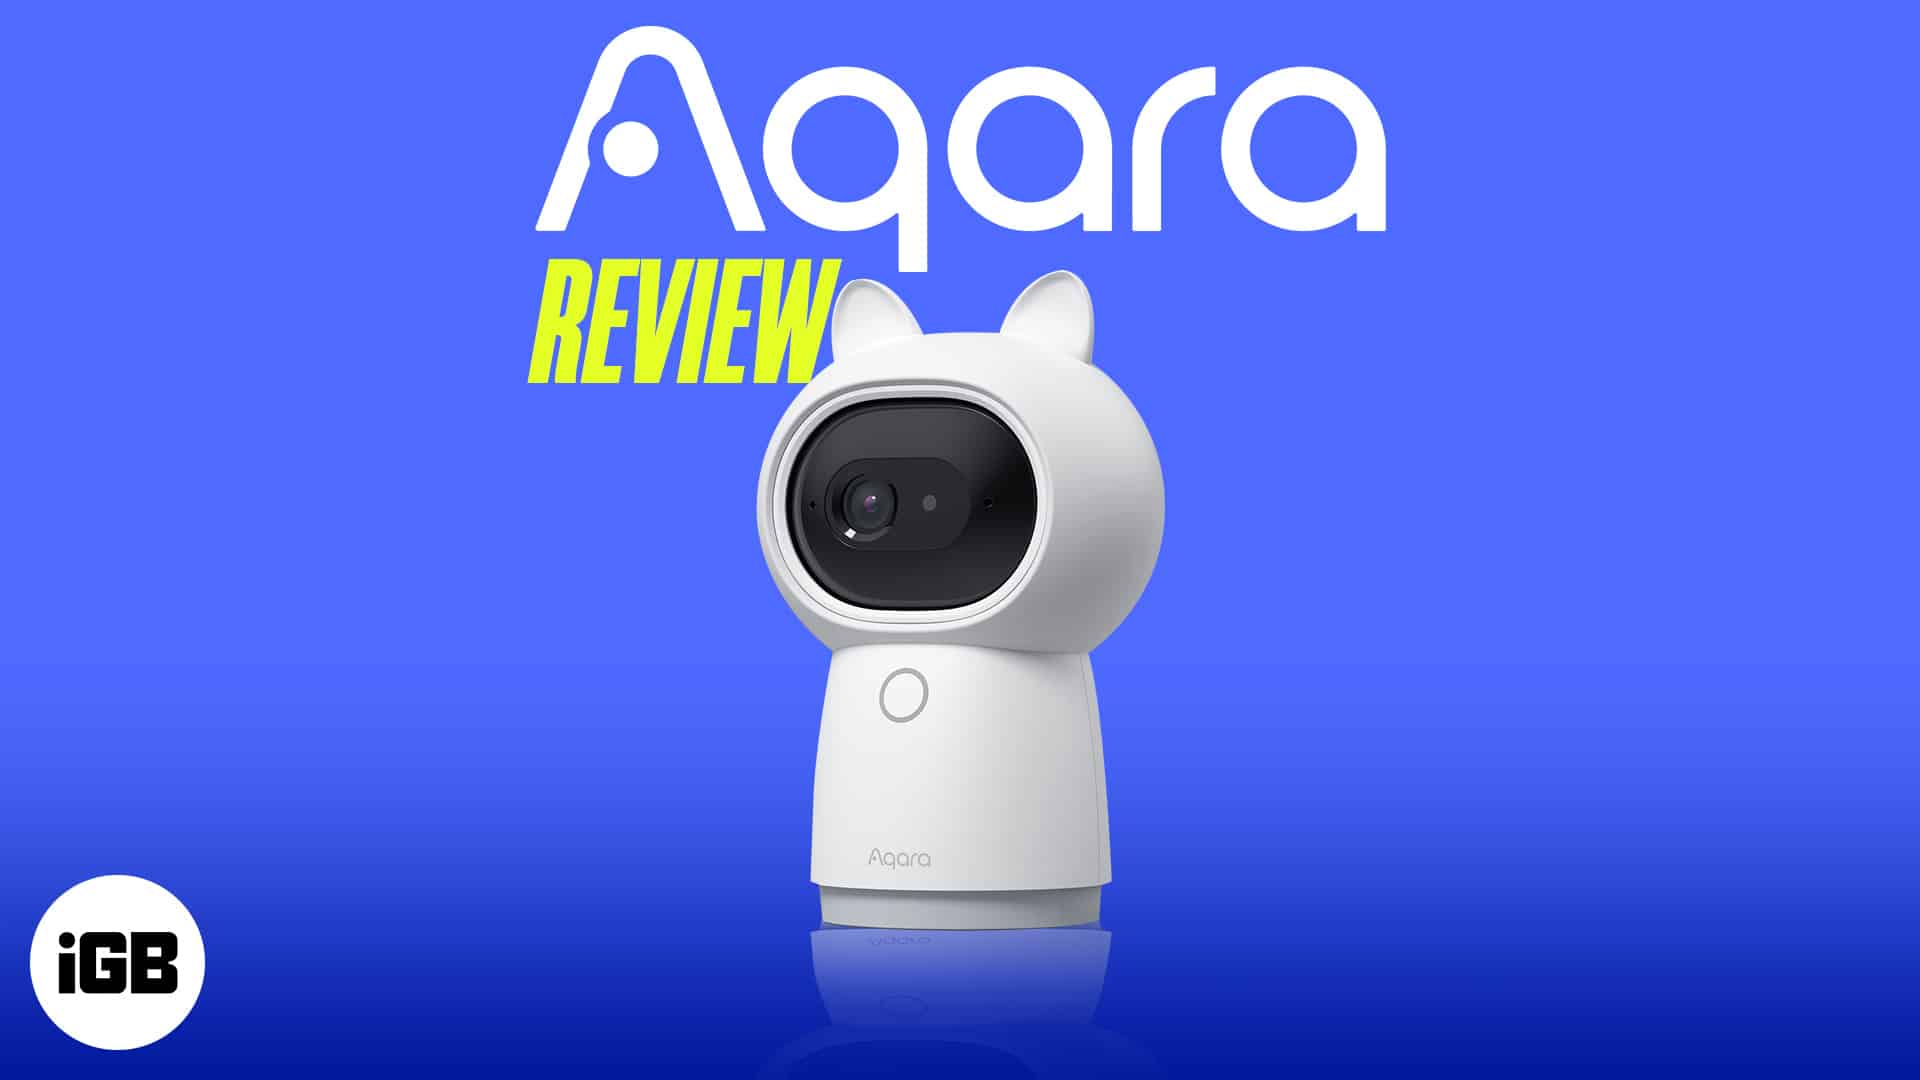 Aqara camera hub g3 review